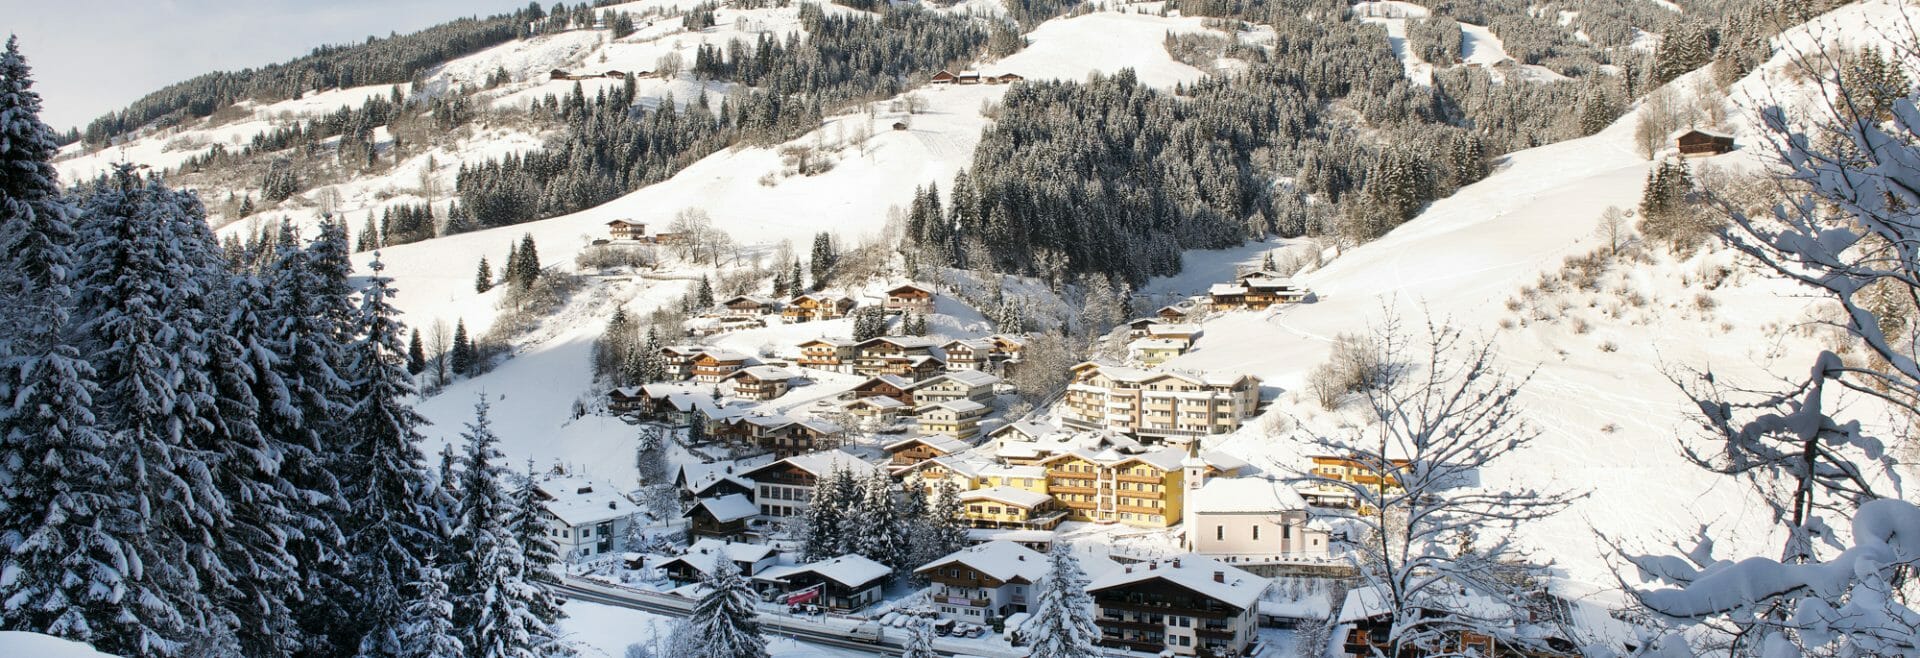 Viehhofen in winter.